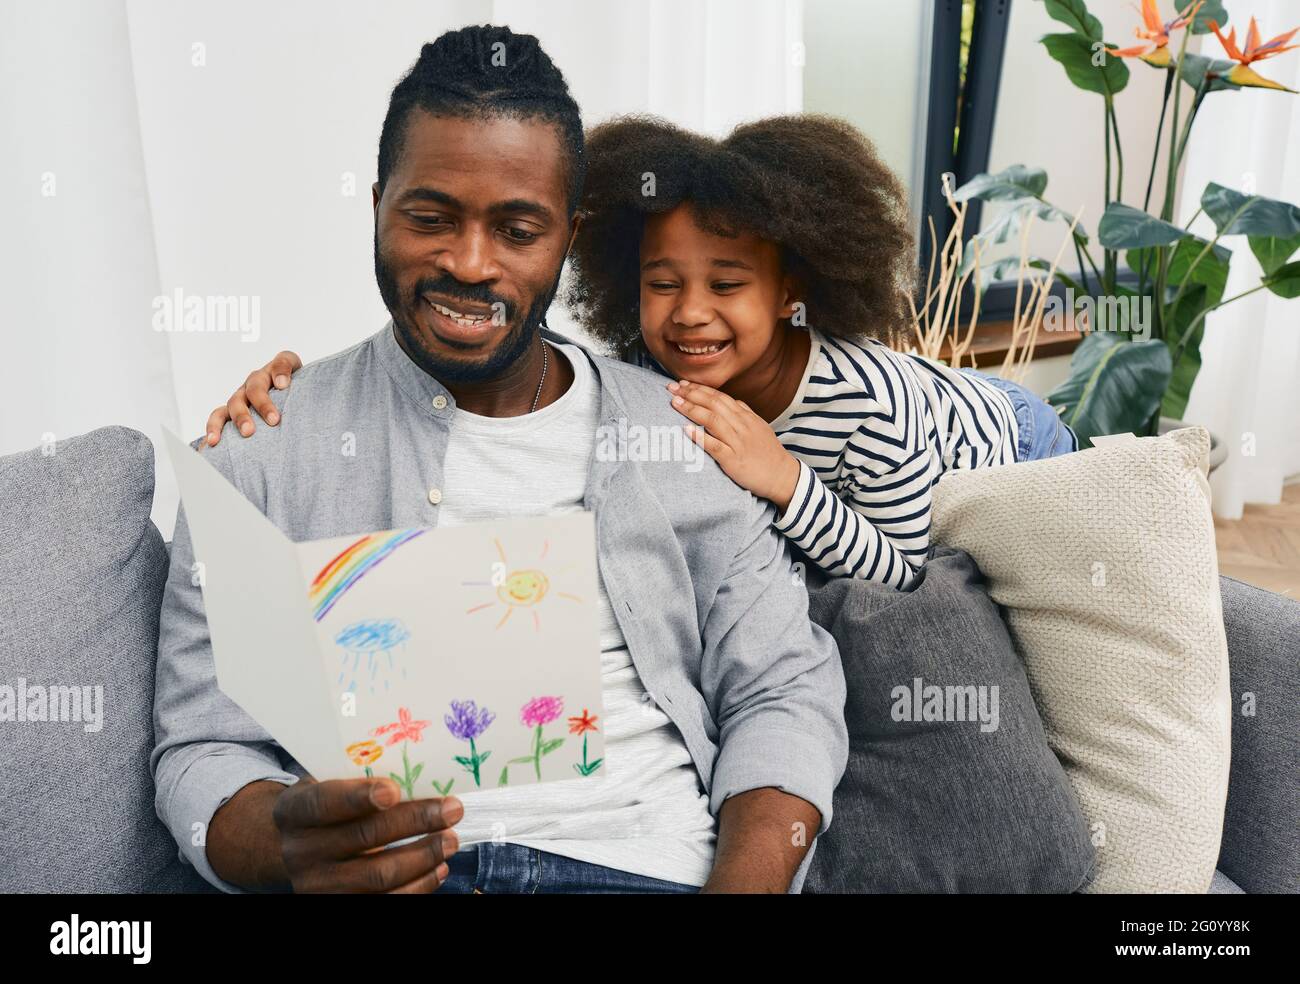 Fête des pères. La fille afro-américaine donne à papa une carte de vœux qu'elle s'est attidée et qu'elle l'embrasse chez elle Banque D'Images